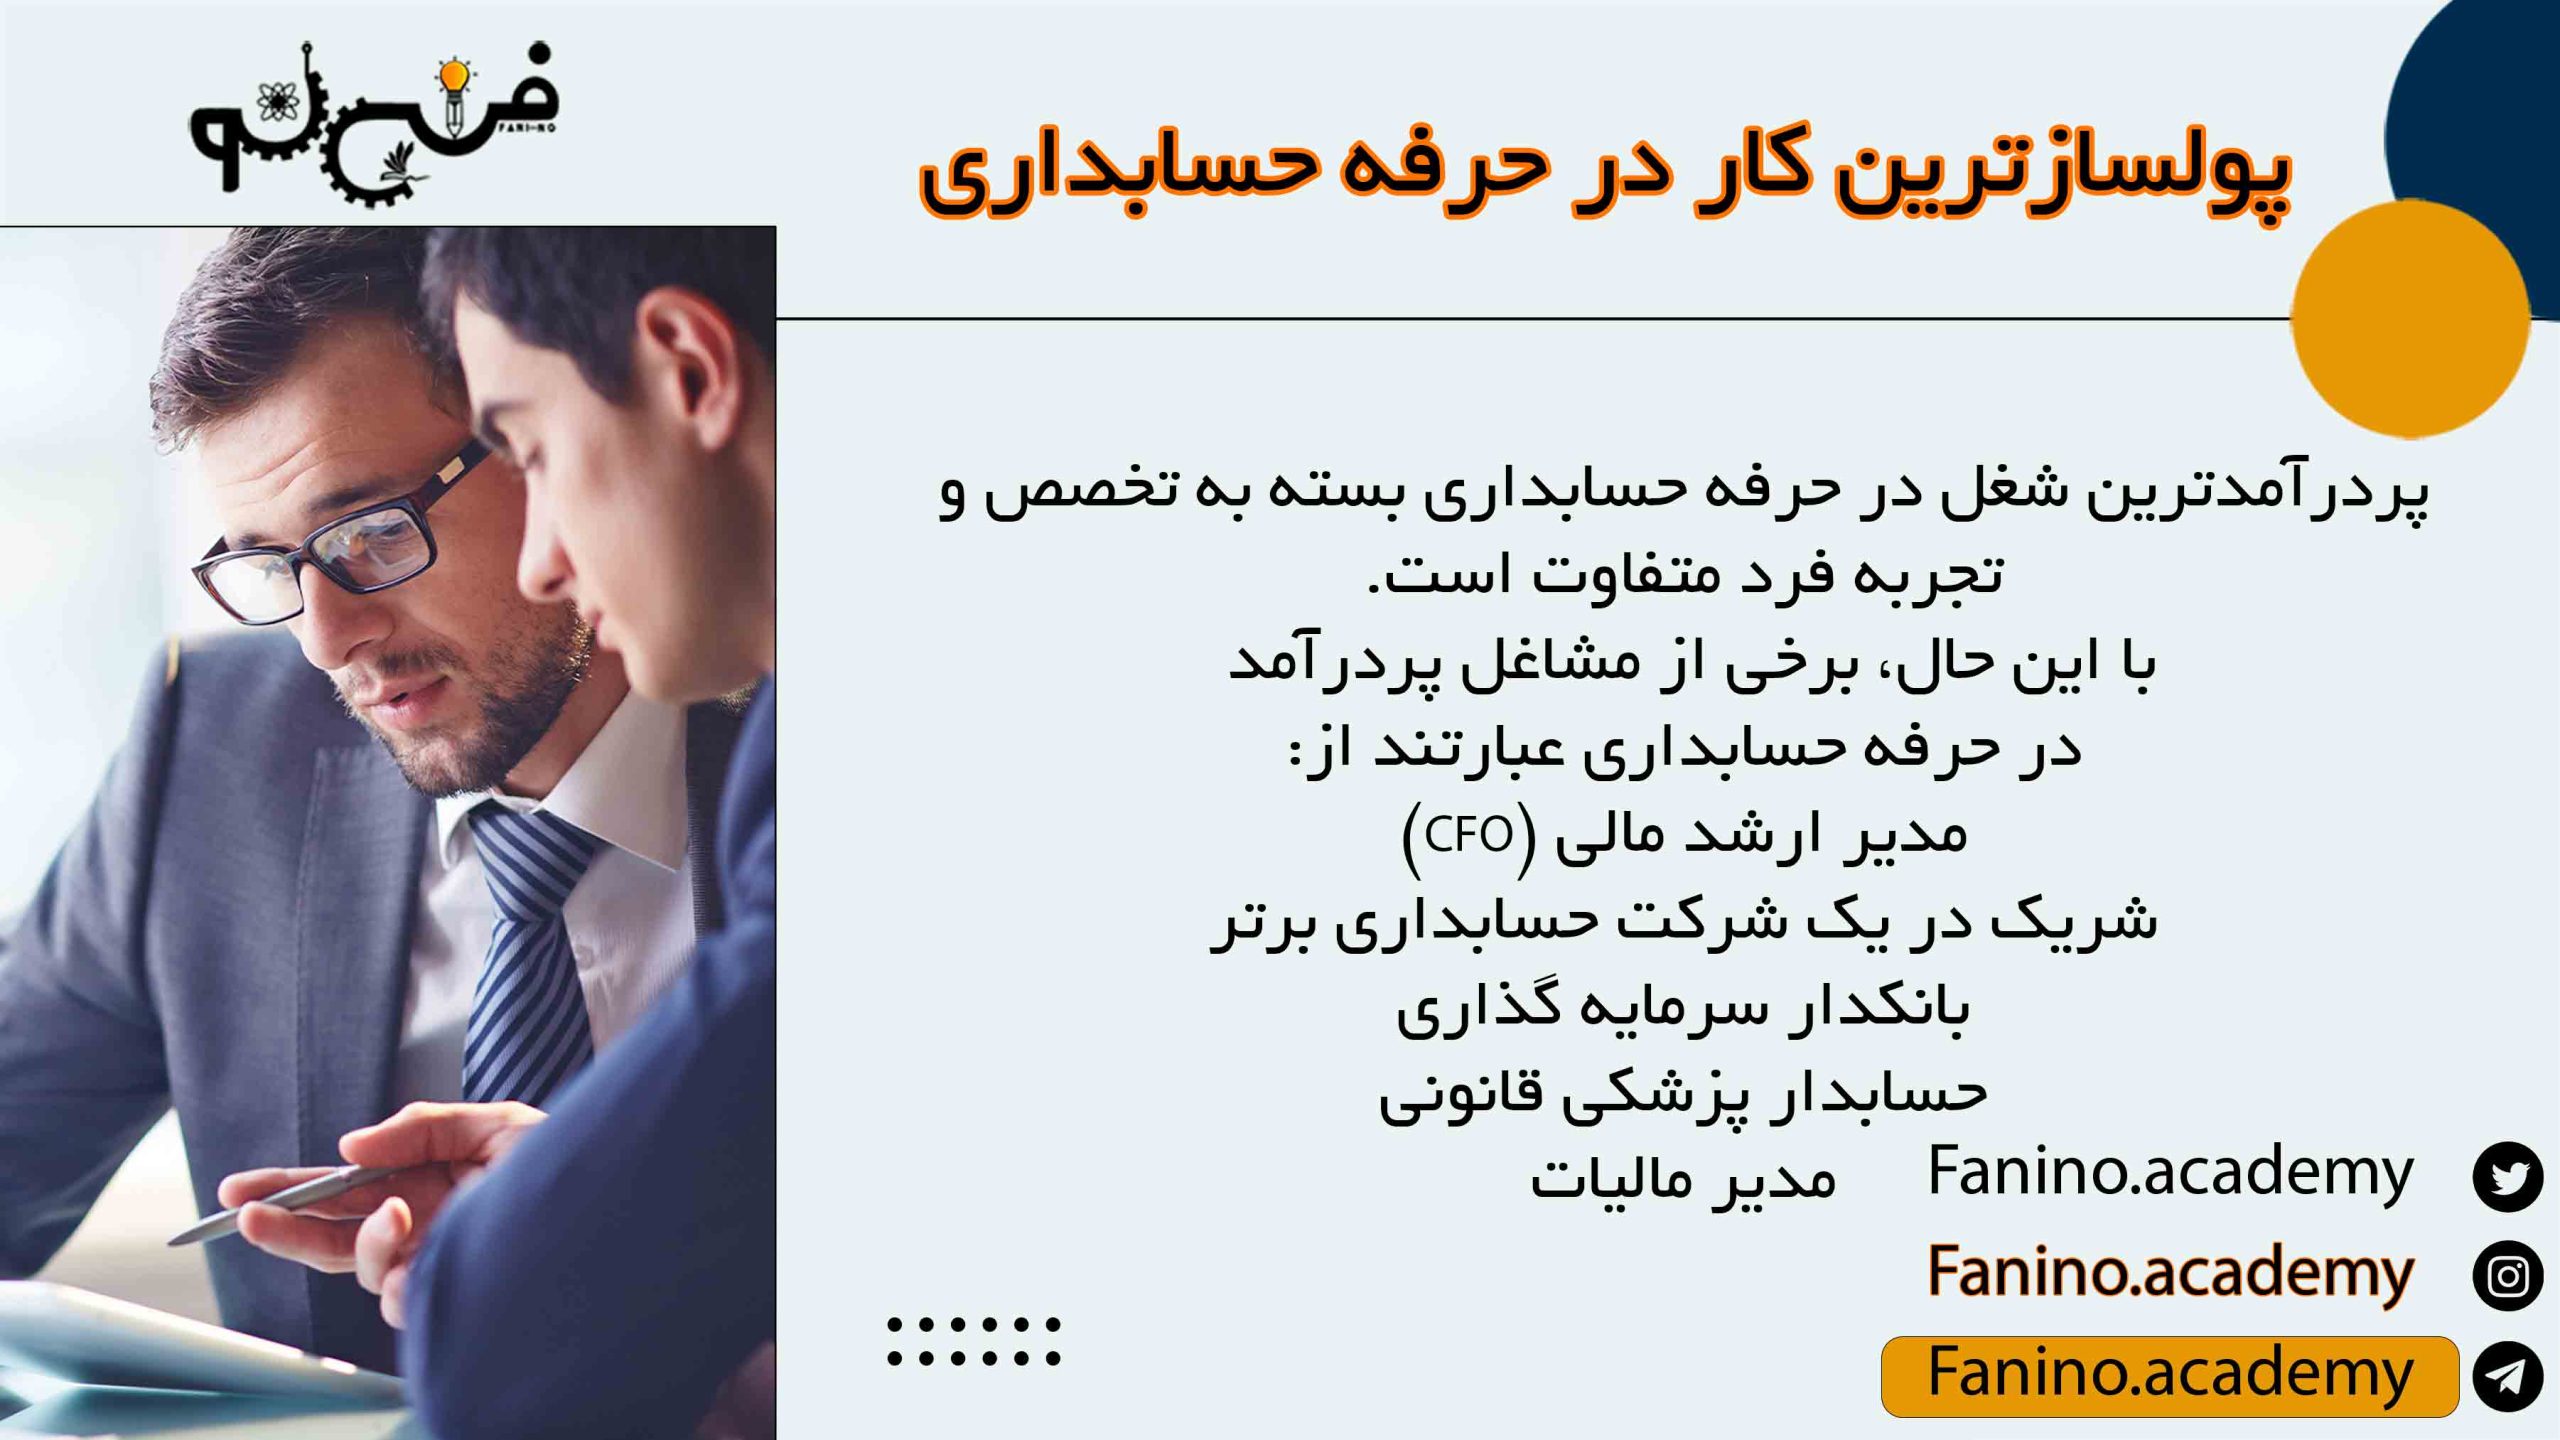 پولسازترین کار در حرفه حسابداری در ایران